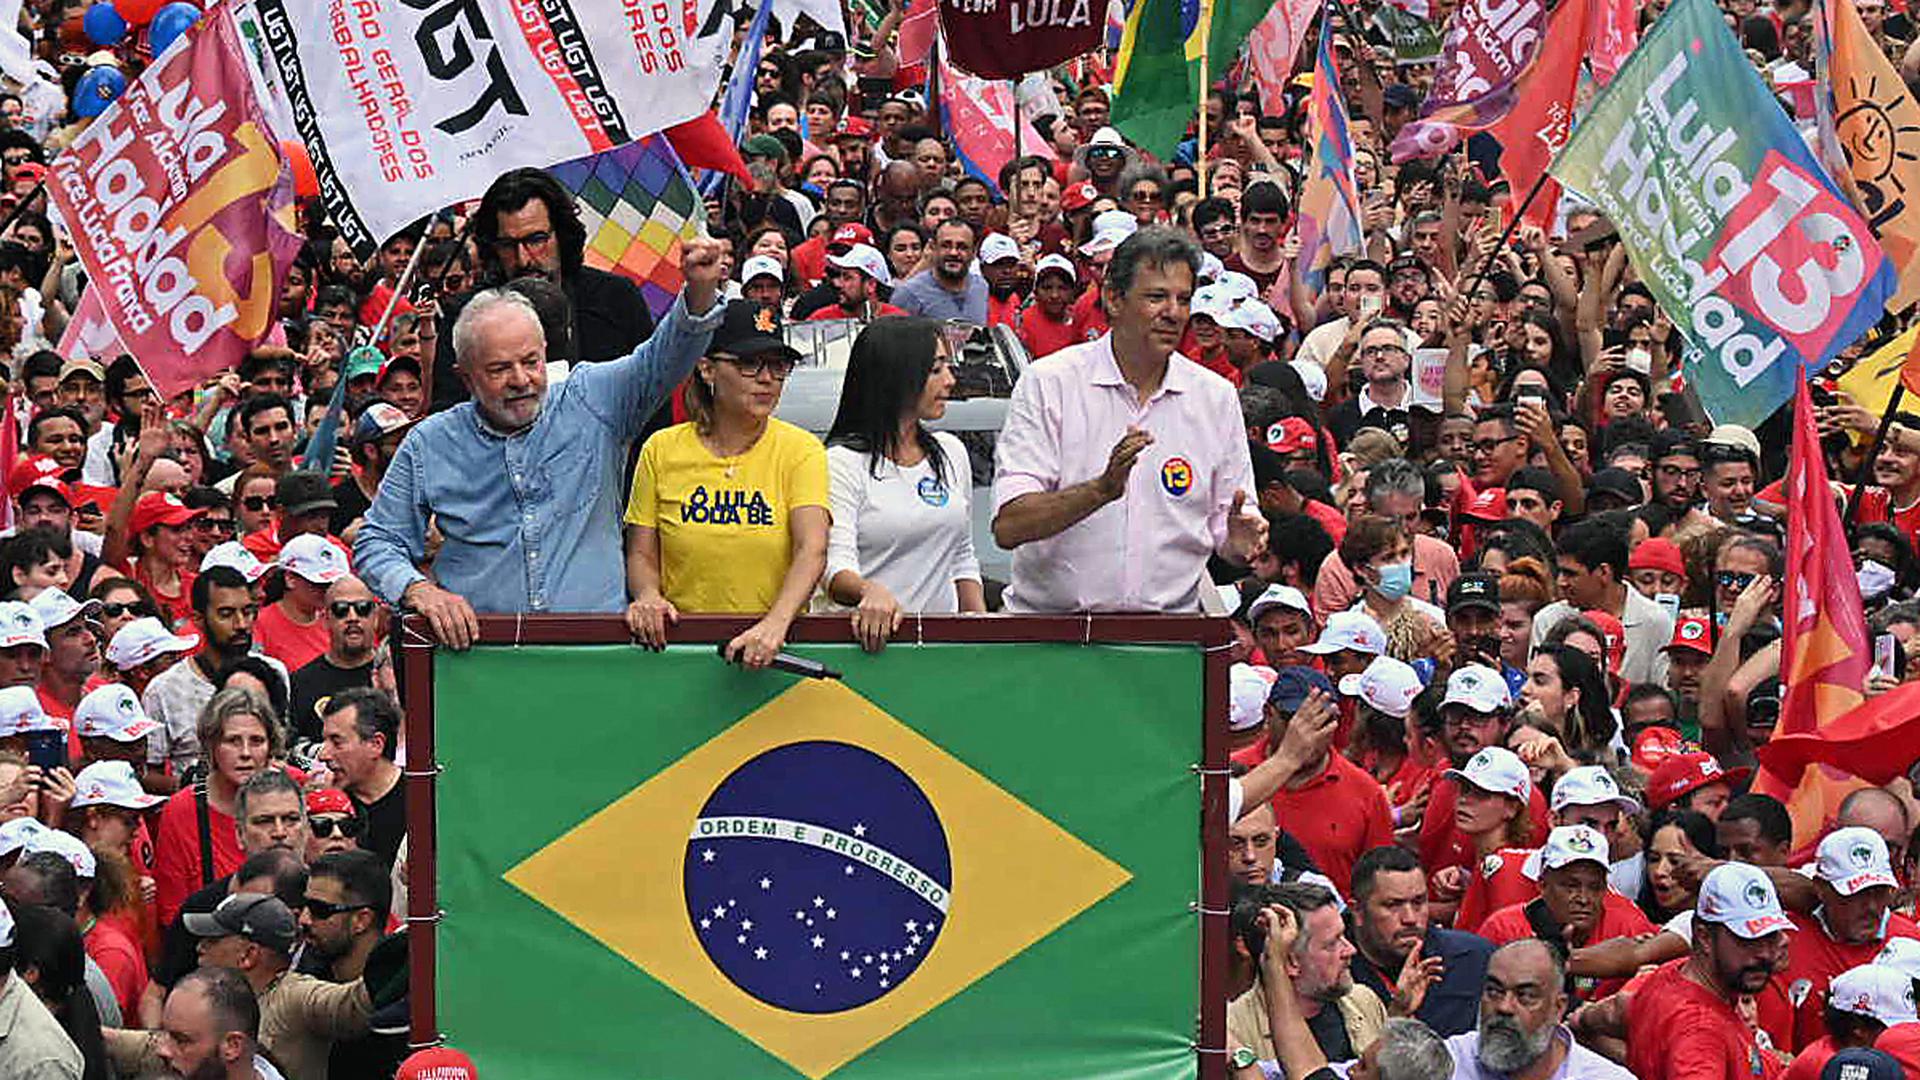 Rosângela da Silva esteve sempre ao lado do petista durante toda a campanha eleitoral.